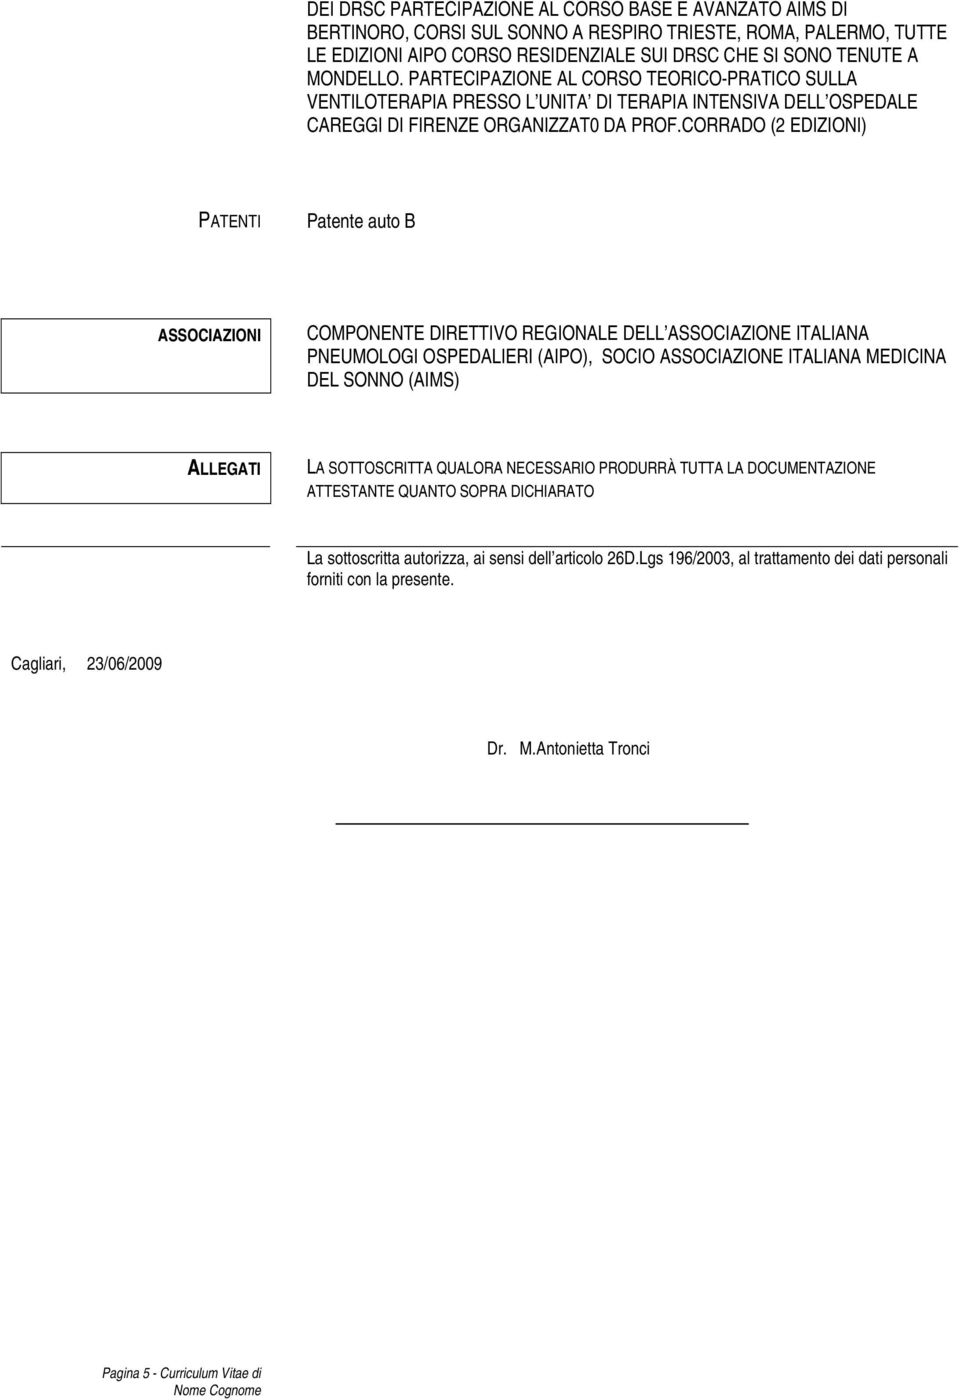 CORRADO (2 EDIZIONI) PATENTI Patente auto B ASSOCIAZIONI COMPONENTE DIRETTIVO REGIONALE DELL ASSOCIAZIONE ITALIANA PNEUMOLOGI OSPEDALIERI (AIPO), SOCIO ASSOCIAZIONE ITALIANA MEDICINA DEL SONNO (AIMS)